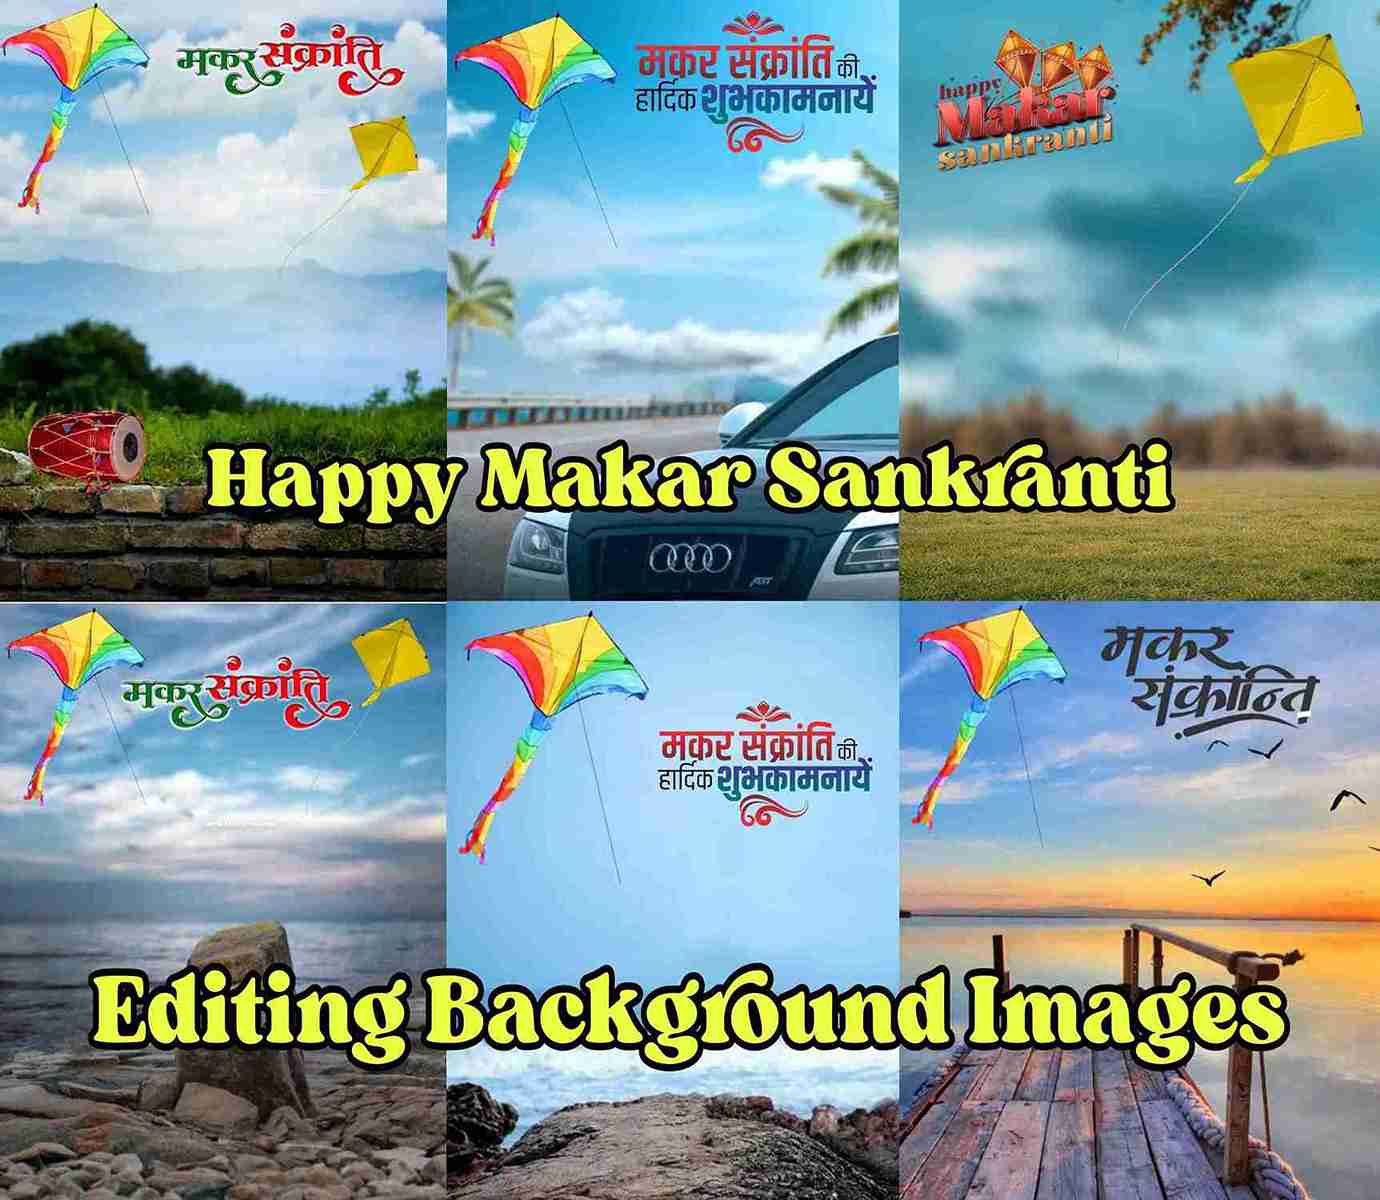 Makar Sankranti Photo Editing Background Images